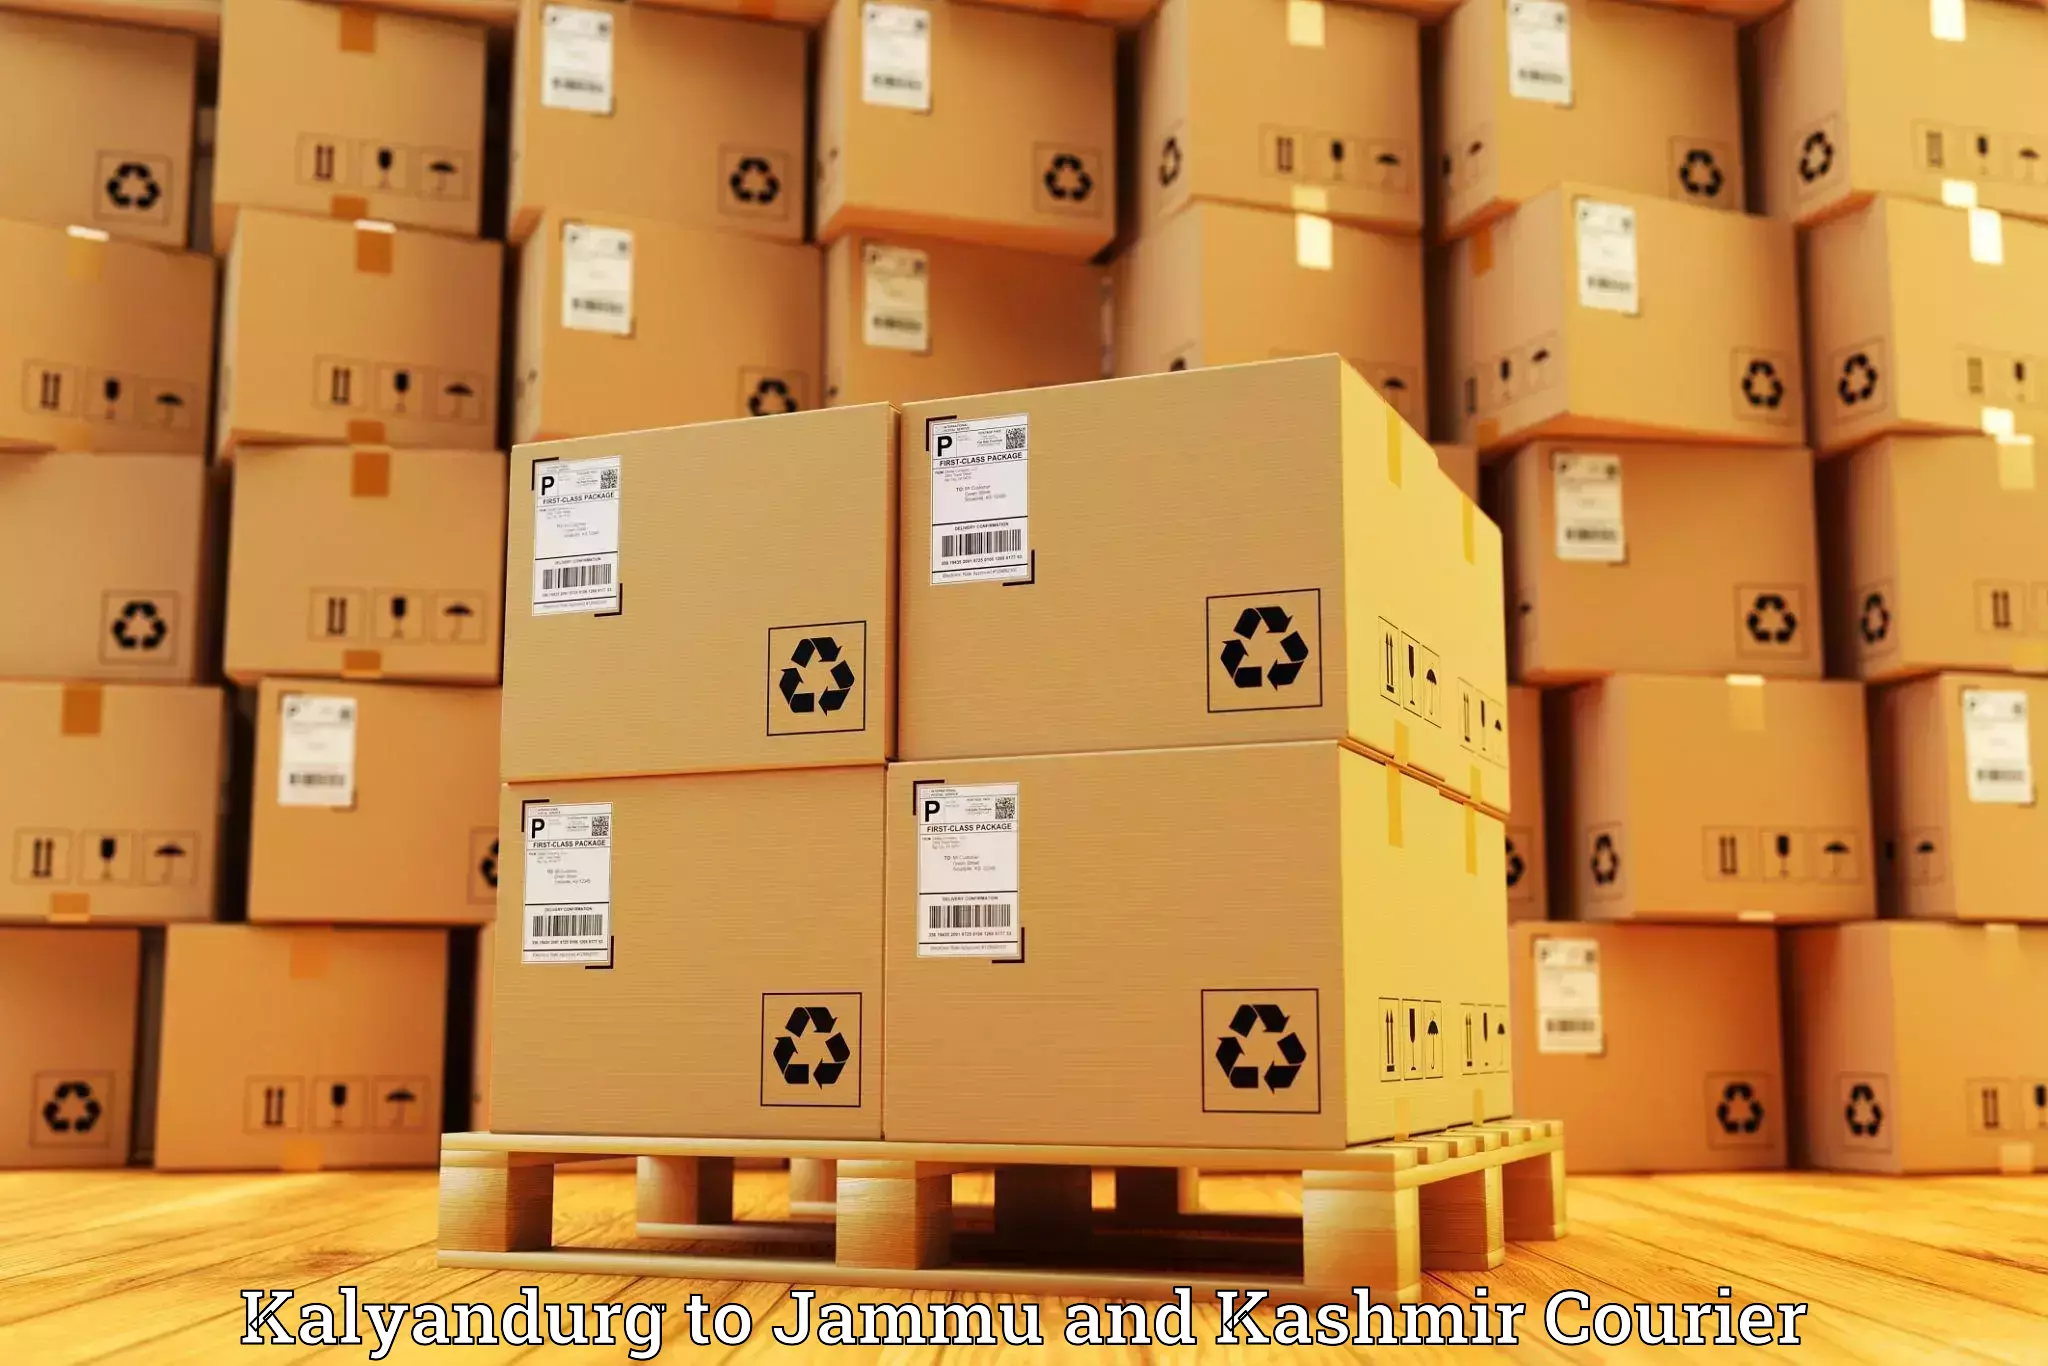 Nationwide courier service in Kalyandurg to Srinagar Kashmir